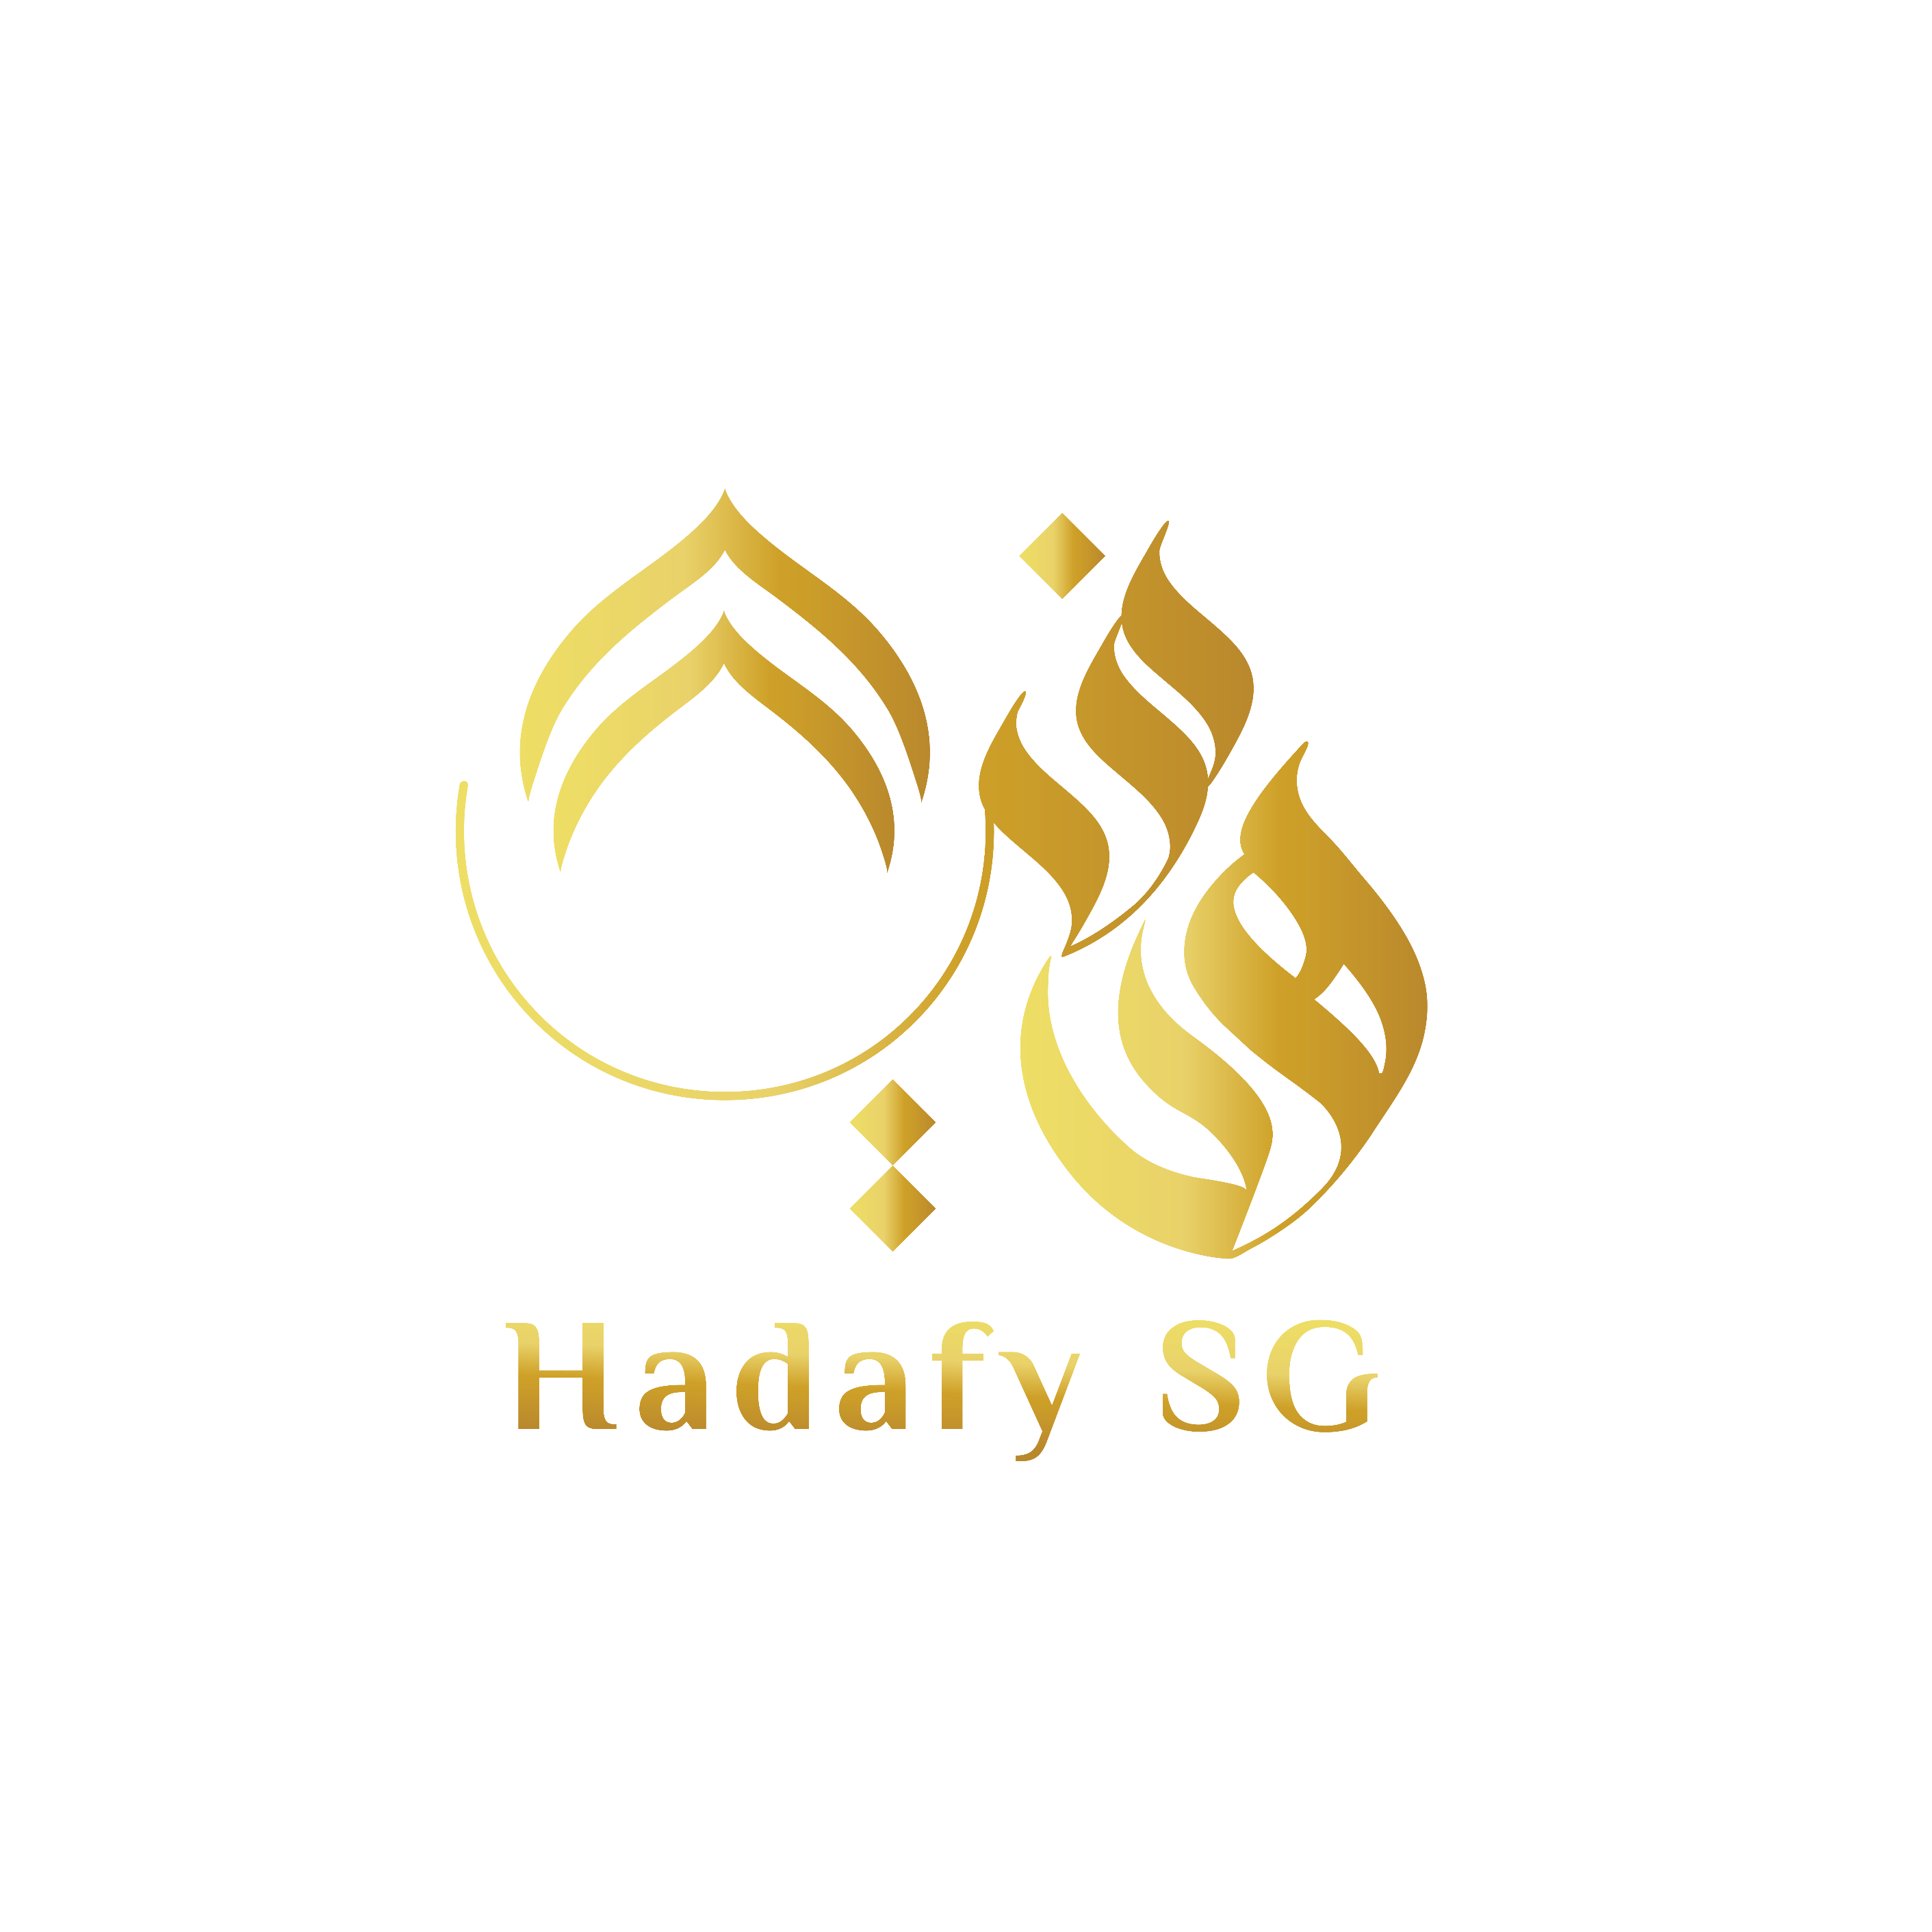 Hadafy SG